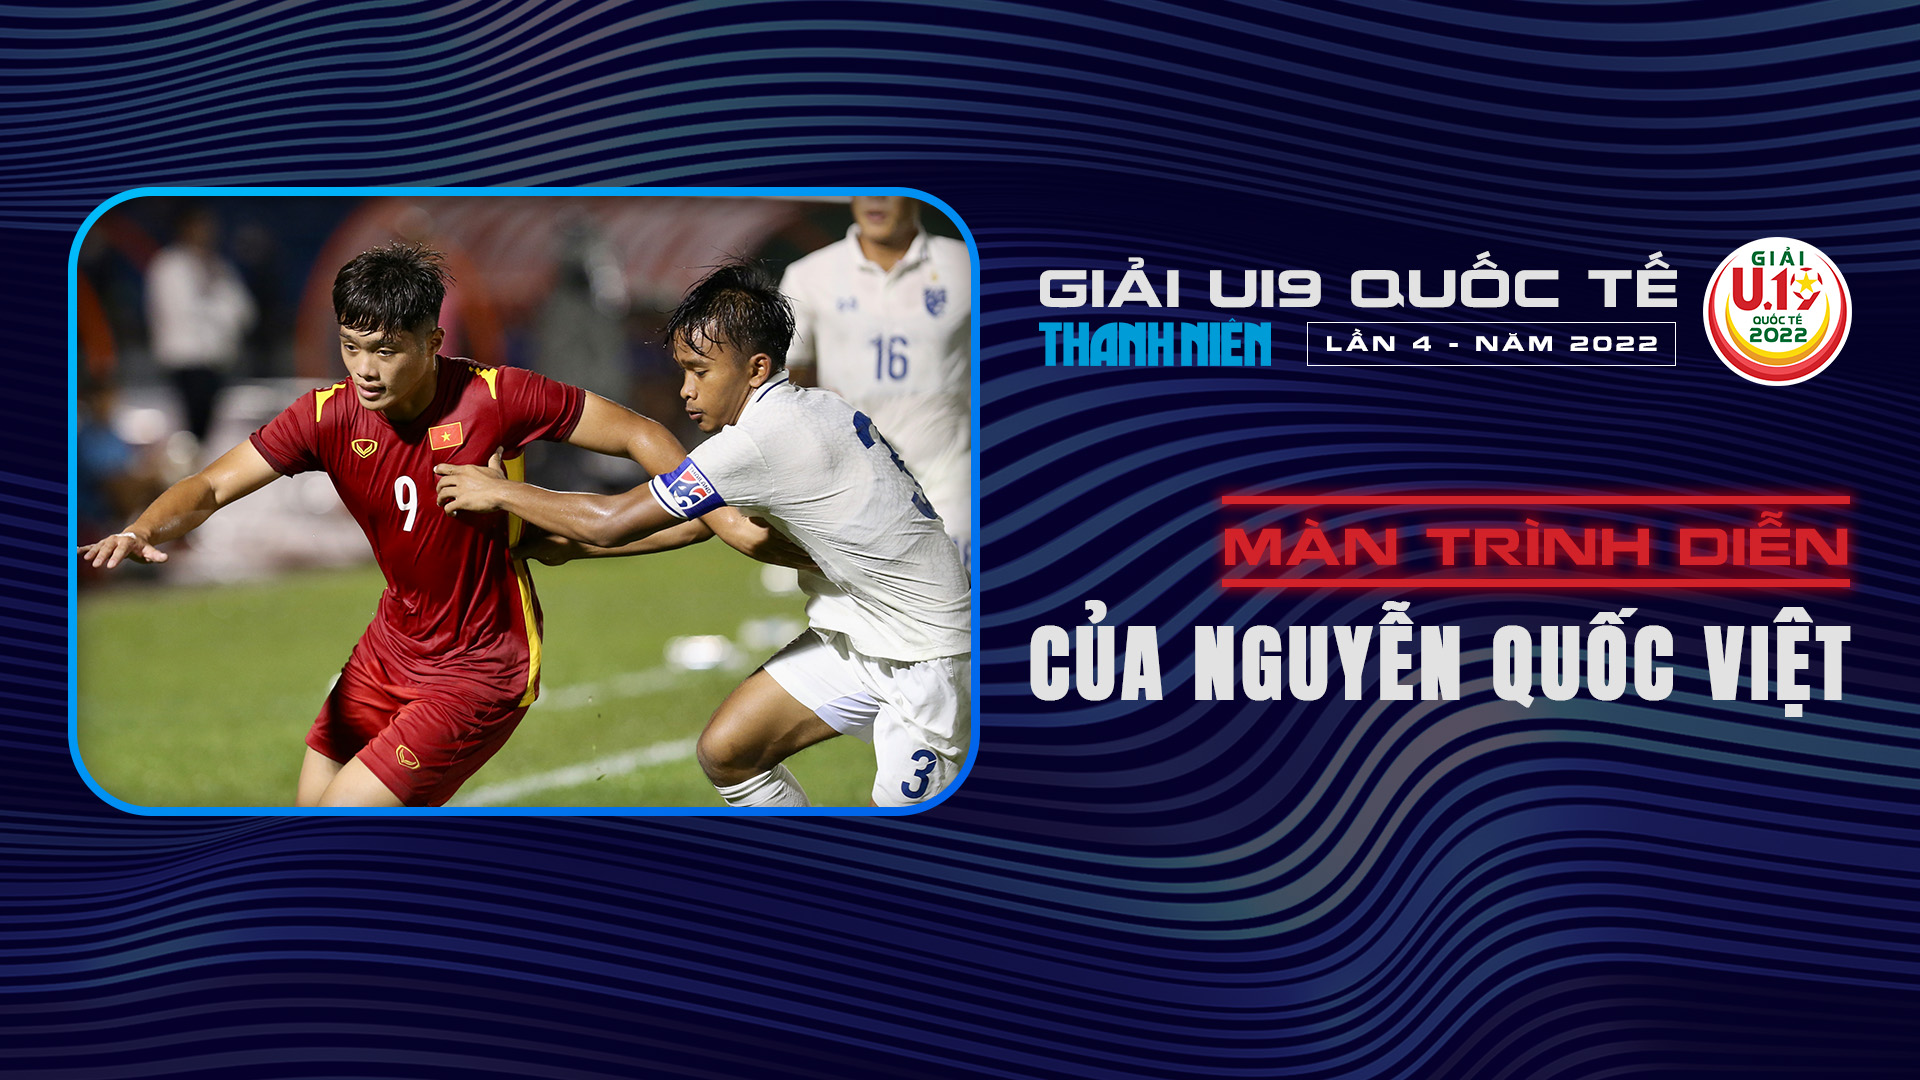 Màn trình diễn của Nguyễn Quốc Việt tại U19 Quốc tế 2022 - U19 Quốc tế